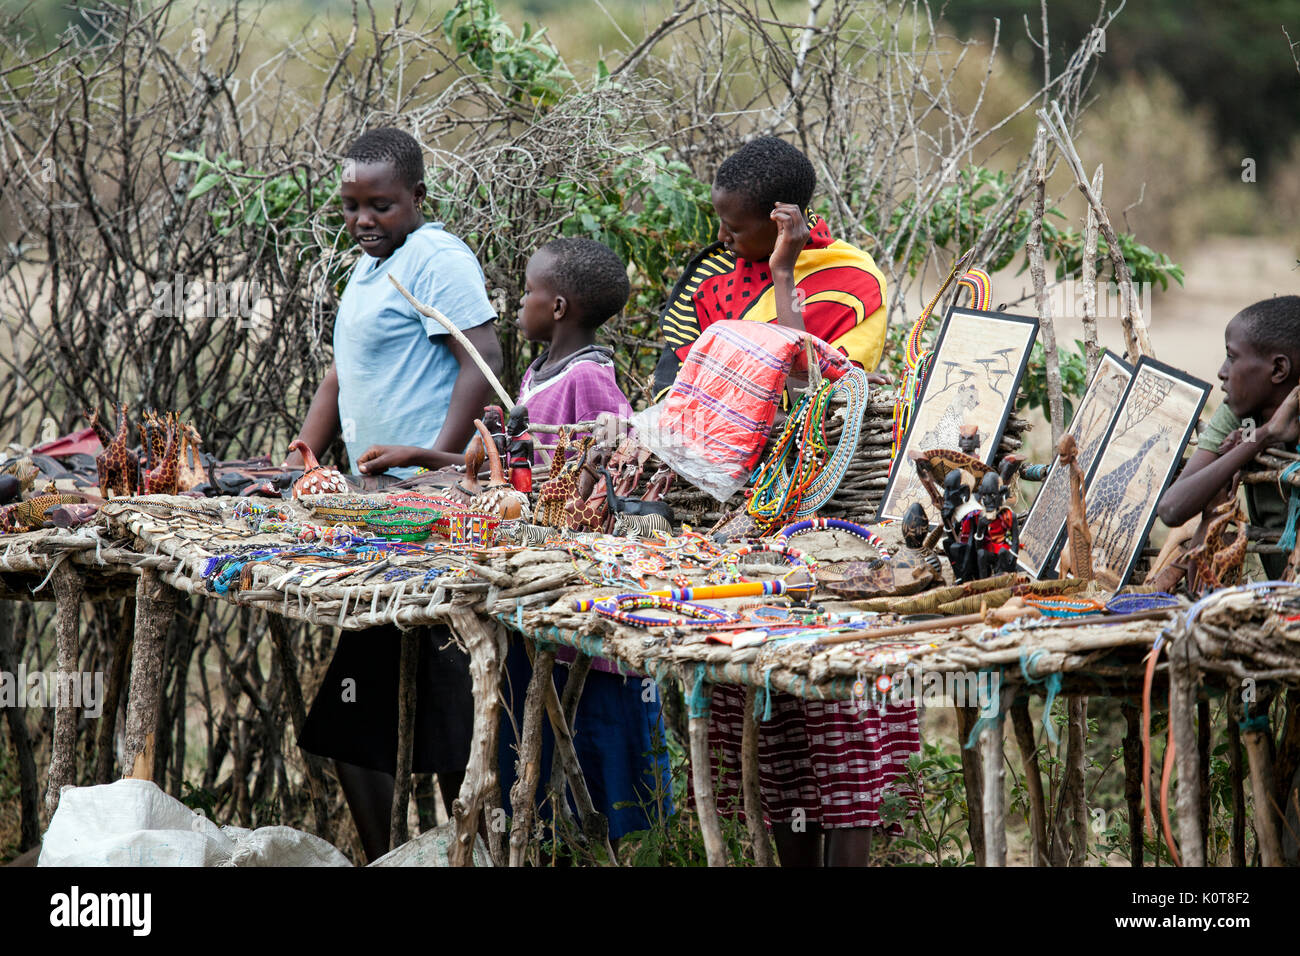 Petit marché Masai village bordée de marchandises d'artisanat, Kenya, Afrique. Banque D'Images